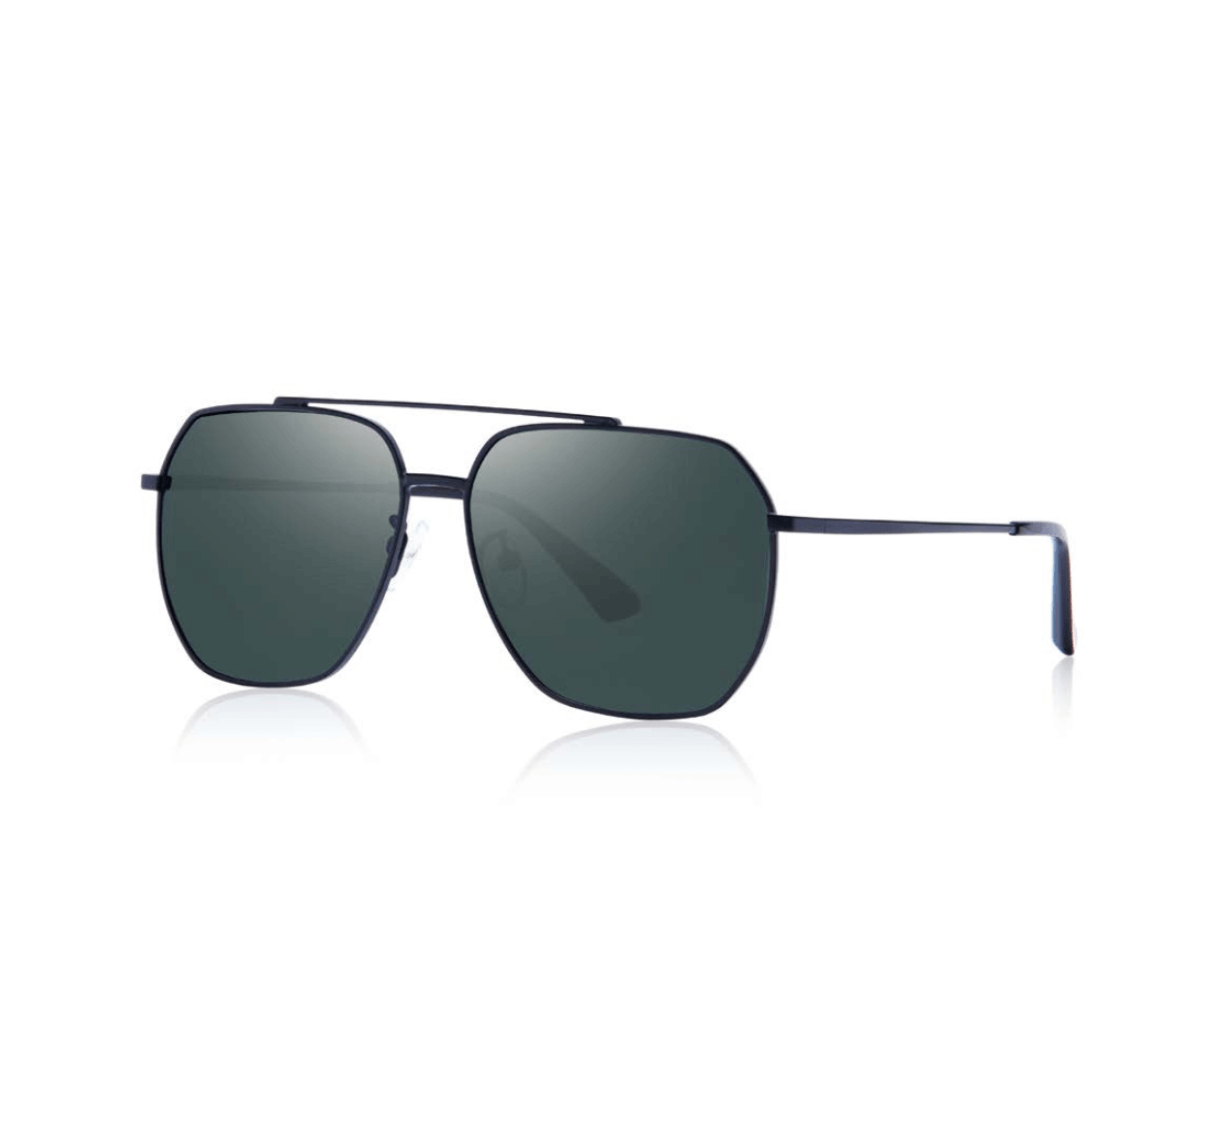 Custom Metal Sunglasses from China - Custom Sunglasses Manufacturer - Custom Eyewear Manufacturers in China